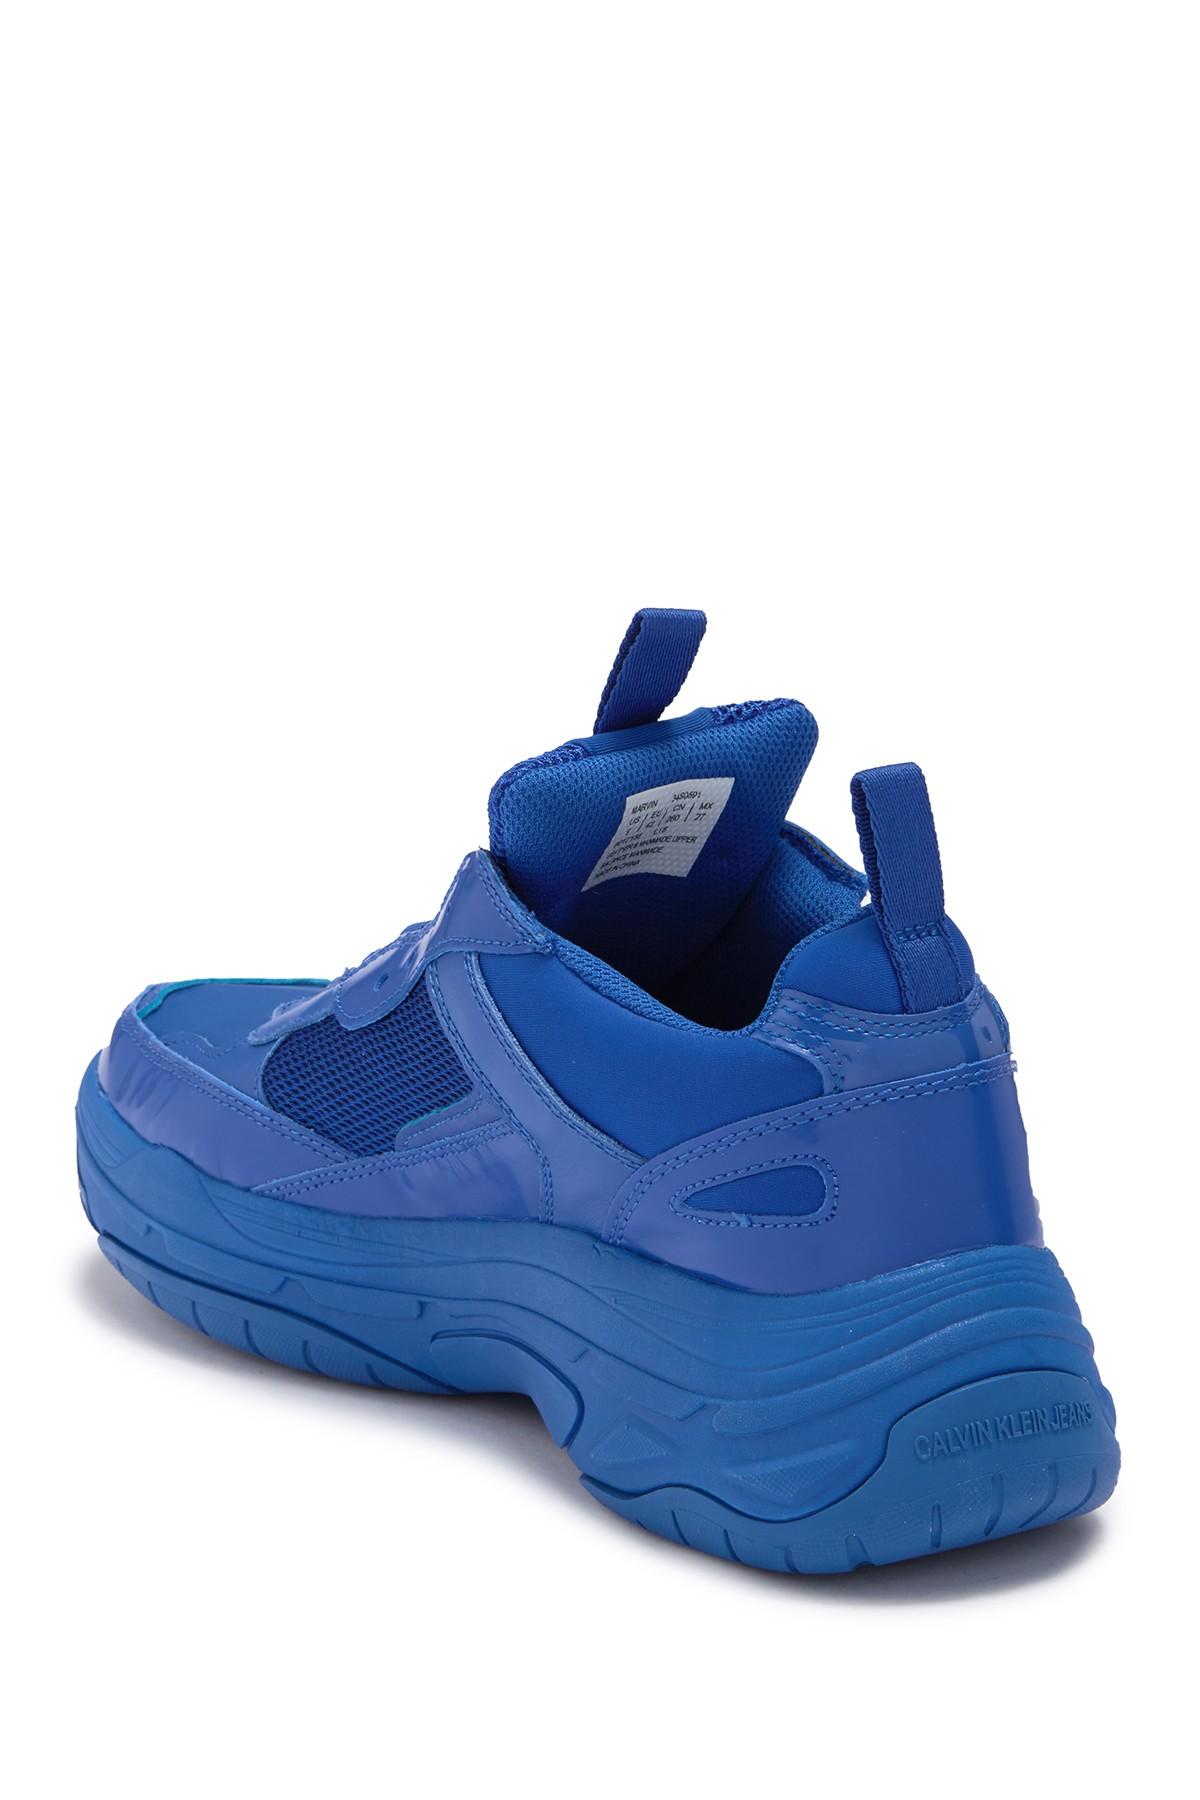 Calvin Klein Marvin Sneaker in Blue for Men - Lyst